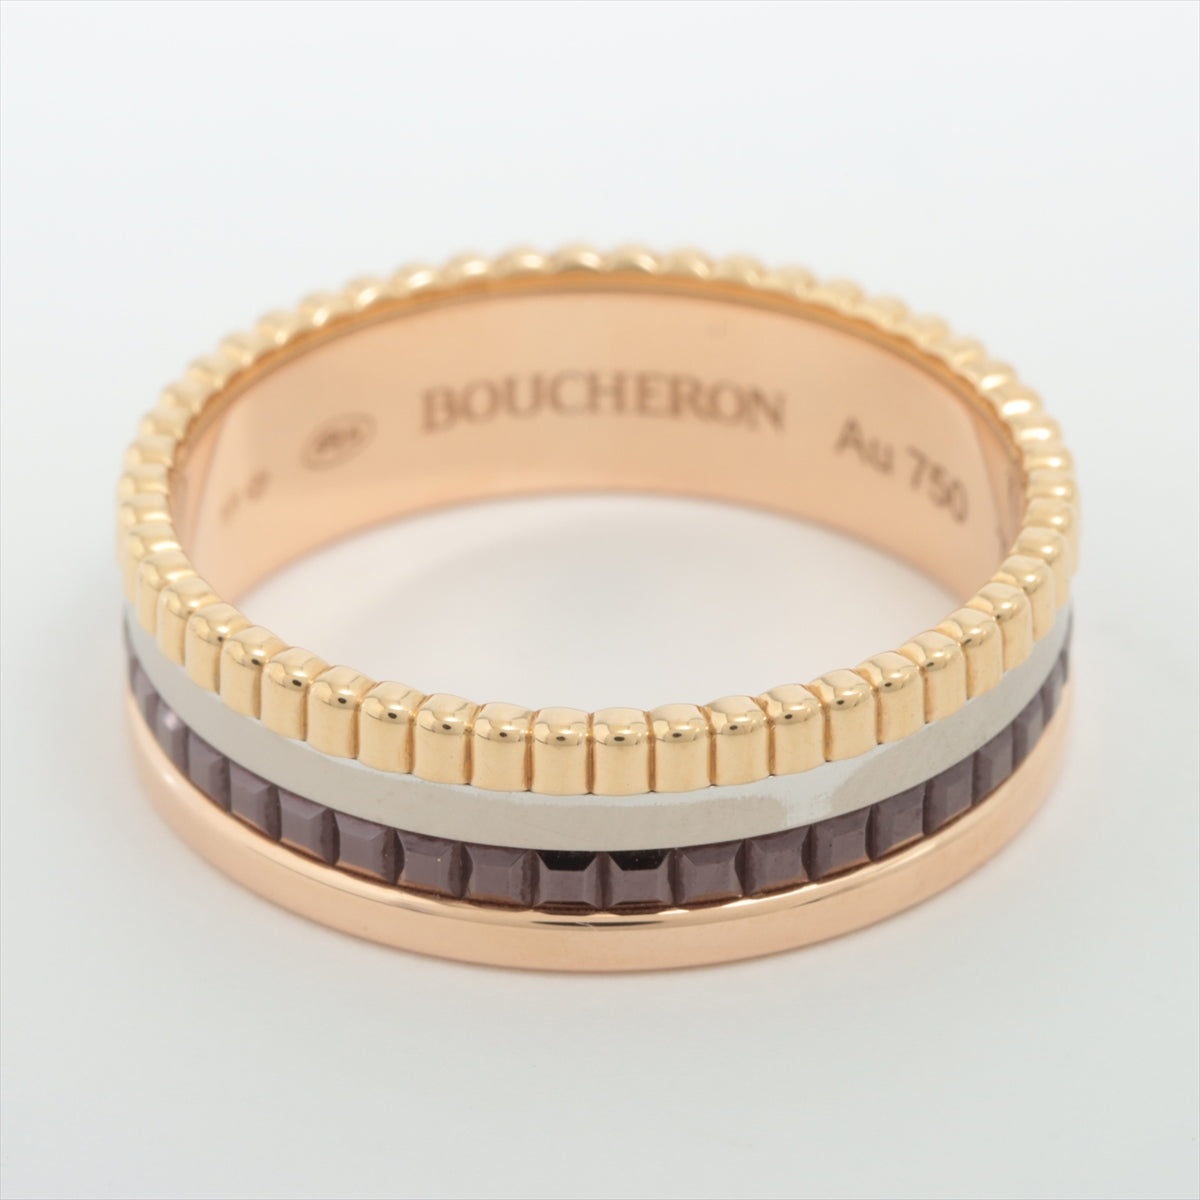 ブシュロン Boucheron キャトルクラシック スモール #67 リング 指輪 26号 18金 K18イエローゴールド メンズ